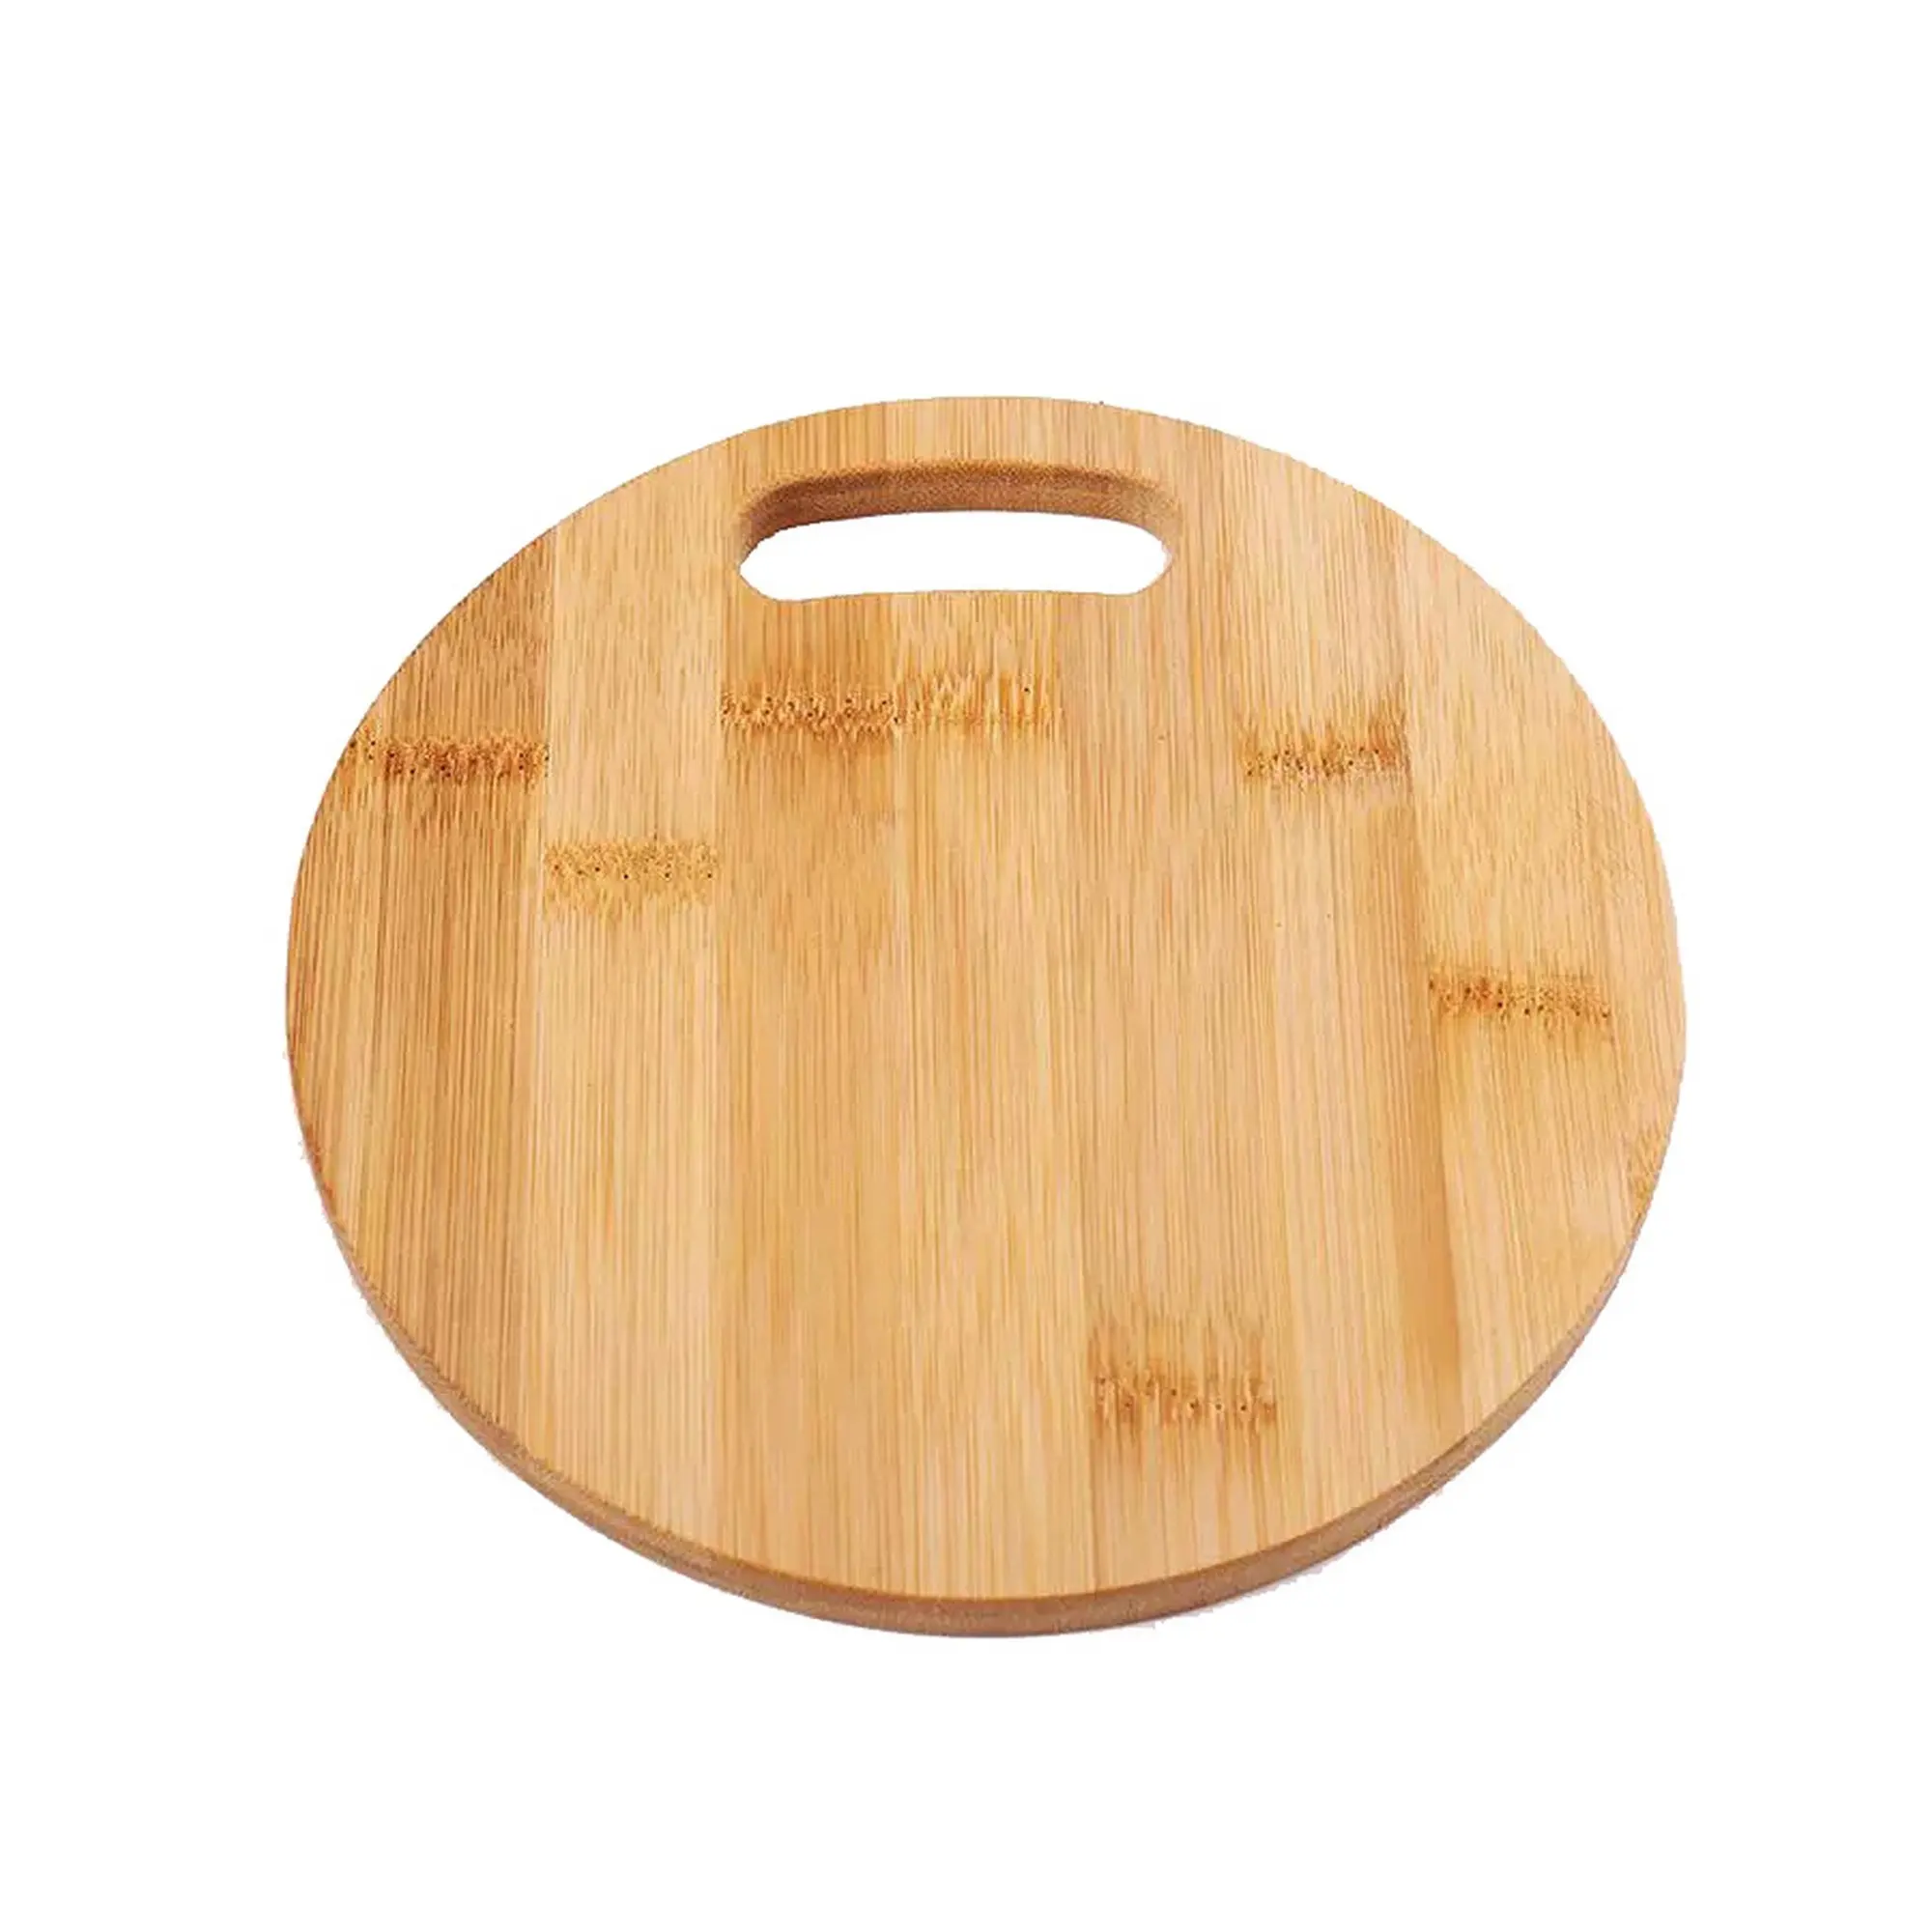 डिजाइन बांस की लकड़ी की पिज्जा पेडल पैडल और कटिंग बोर्ड वाइटनम से हैंडल की गुणवत्ता के साथ